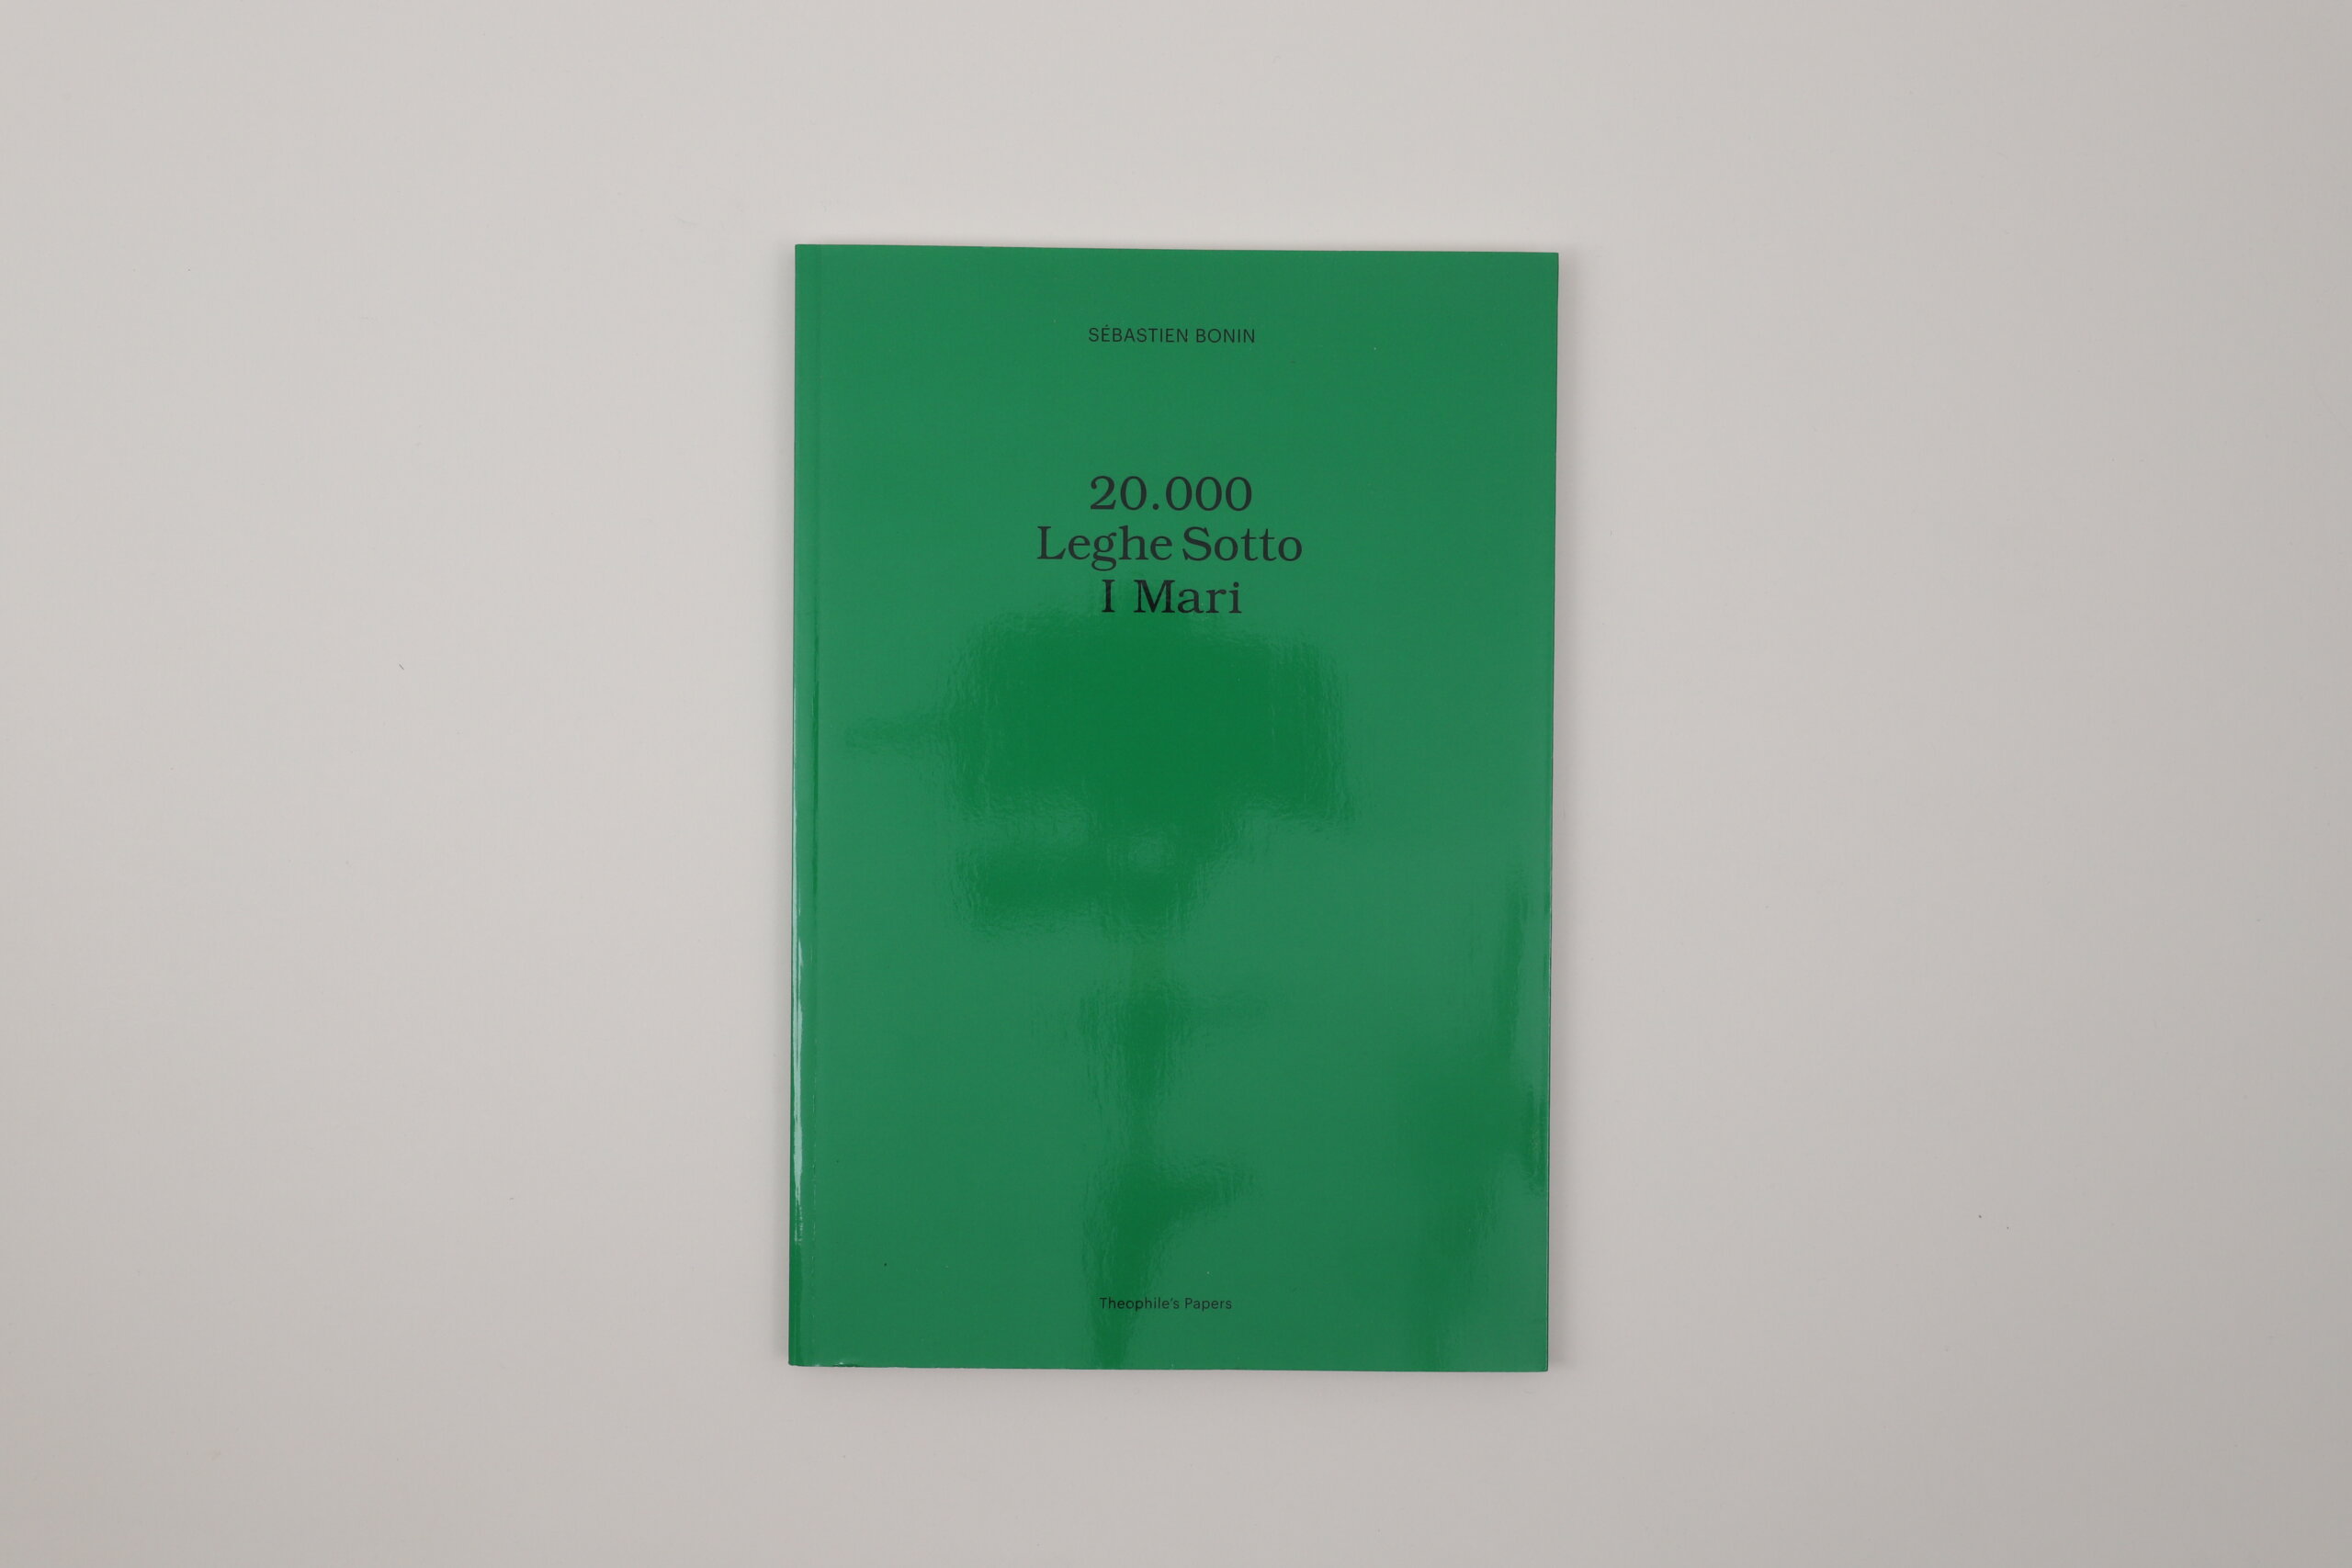 20000-Leghe-Sotto-I-Mari-Sebastien-Bonin-Theophile-s-Papers-cover